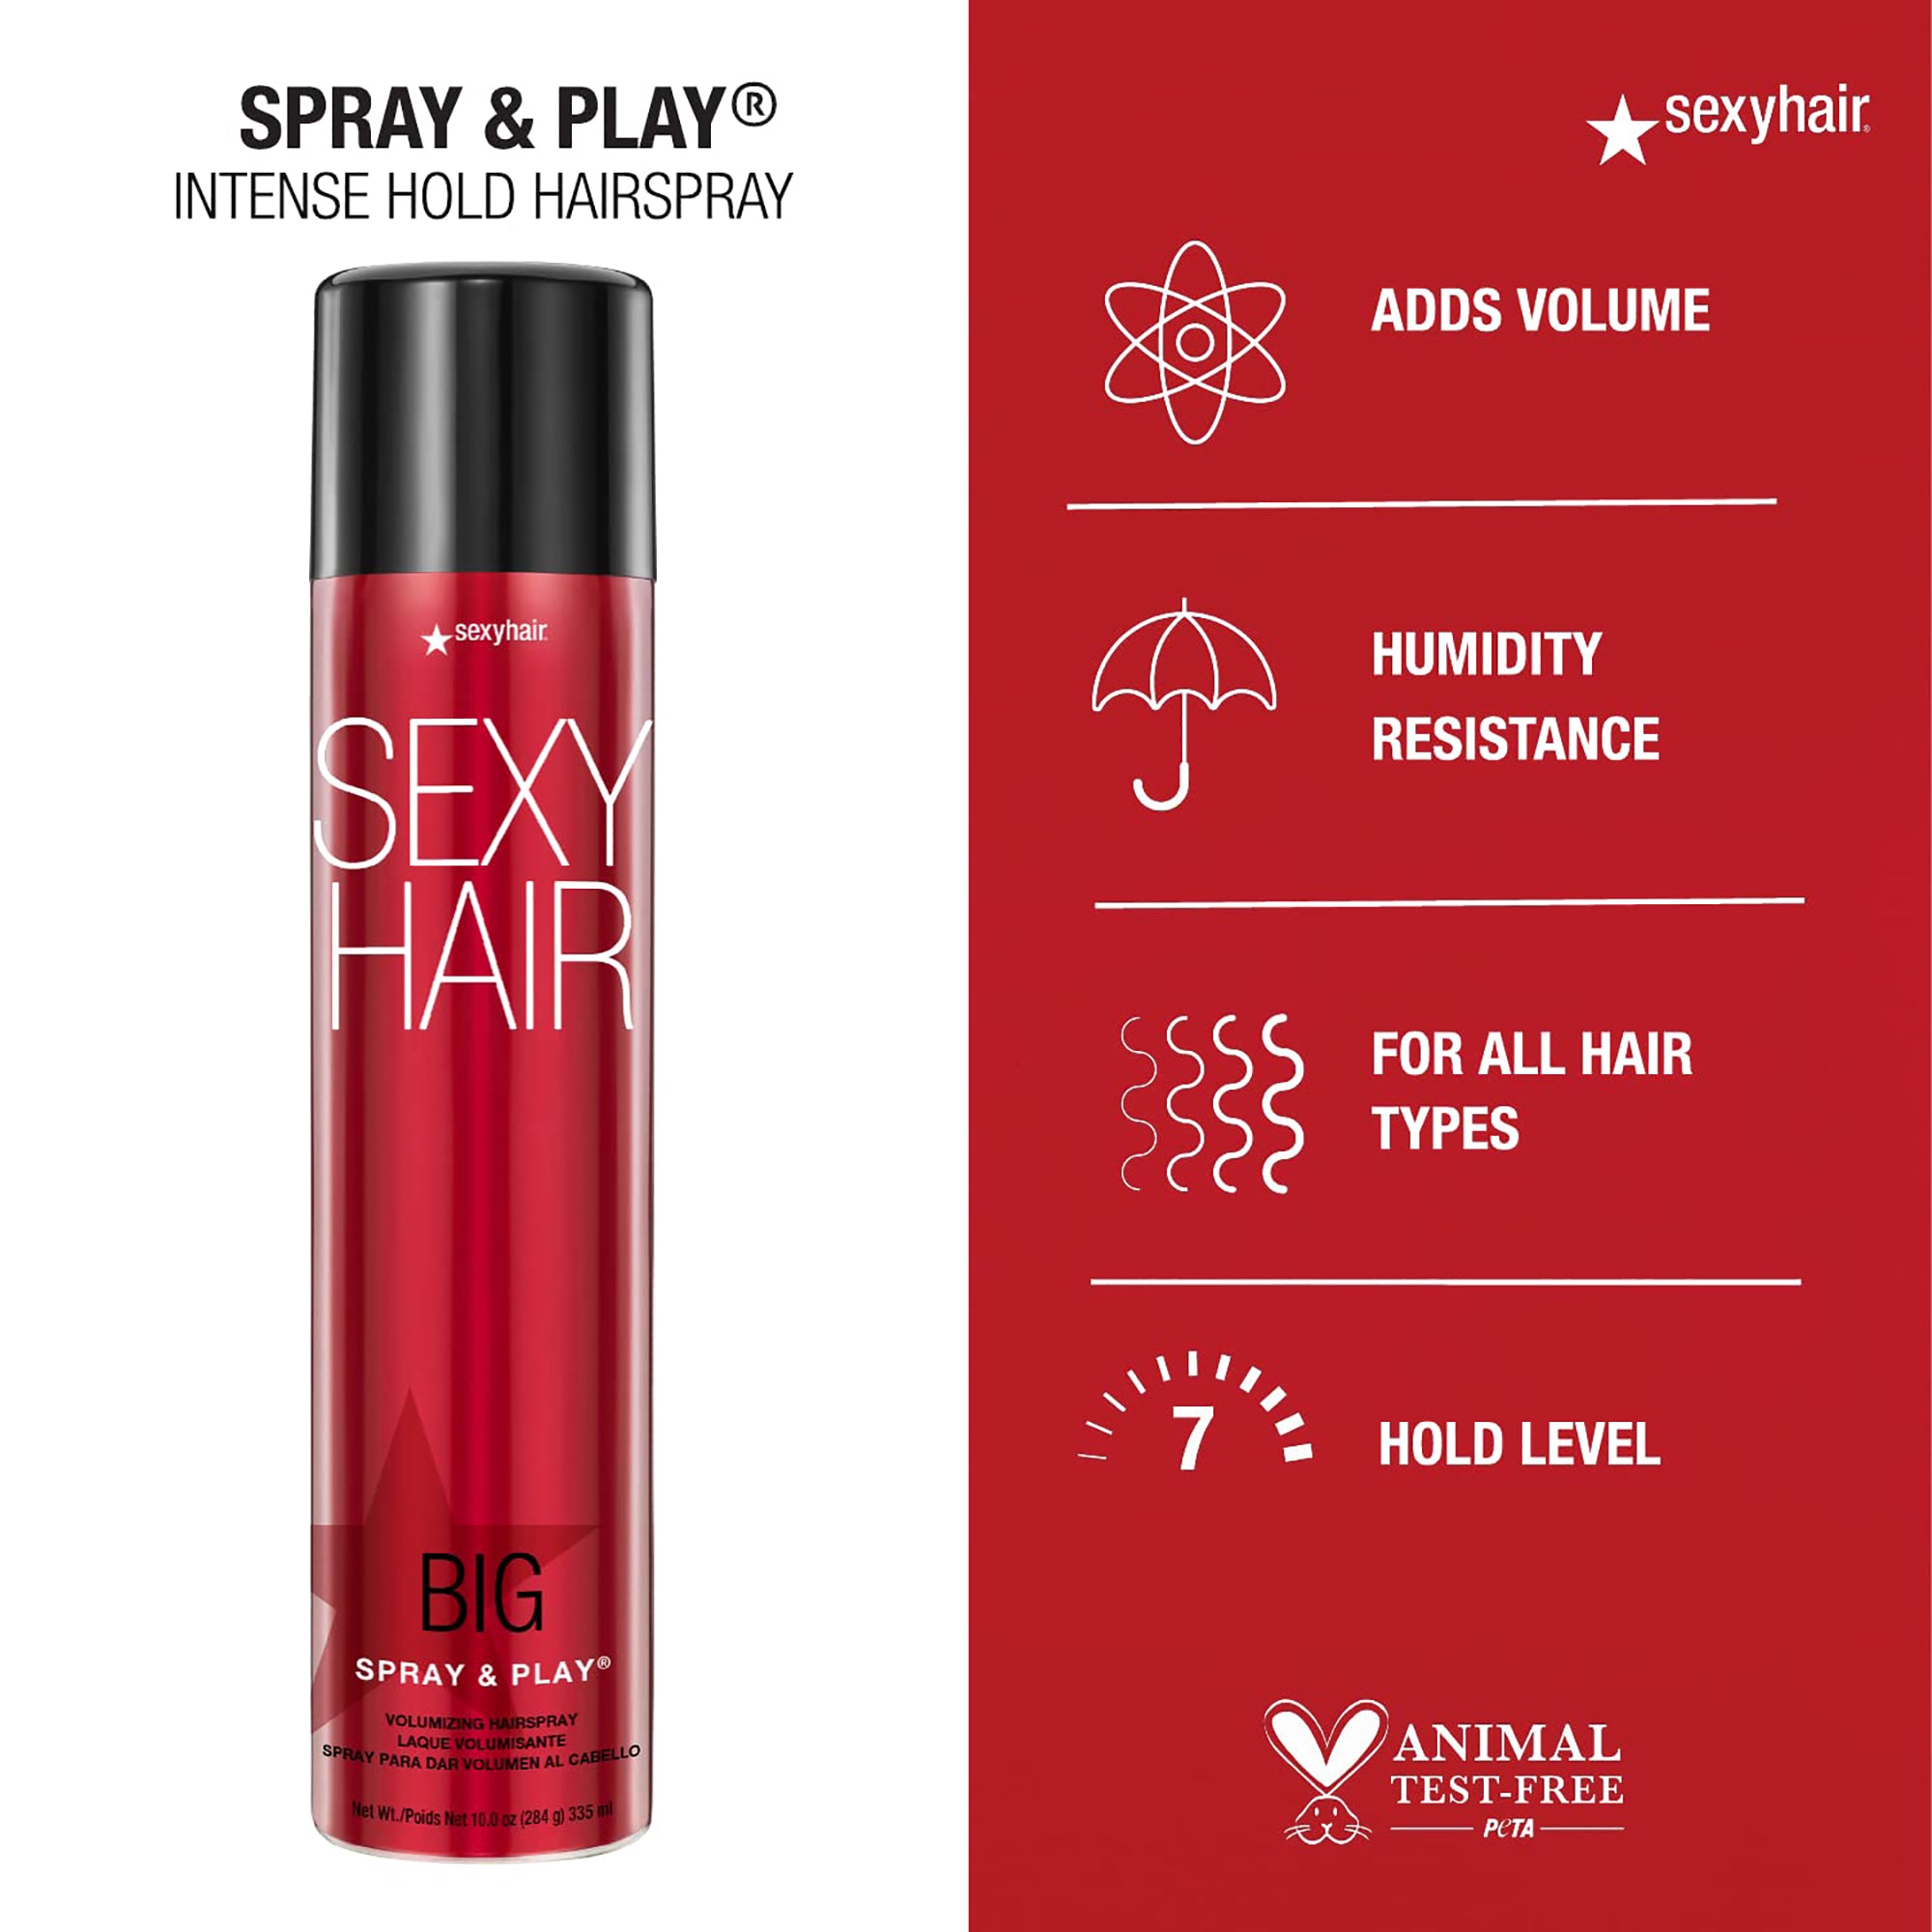 Big Spray & Play - SexyHair